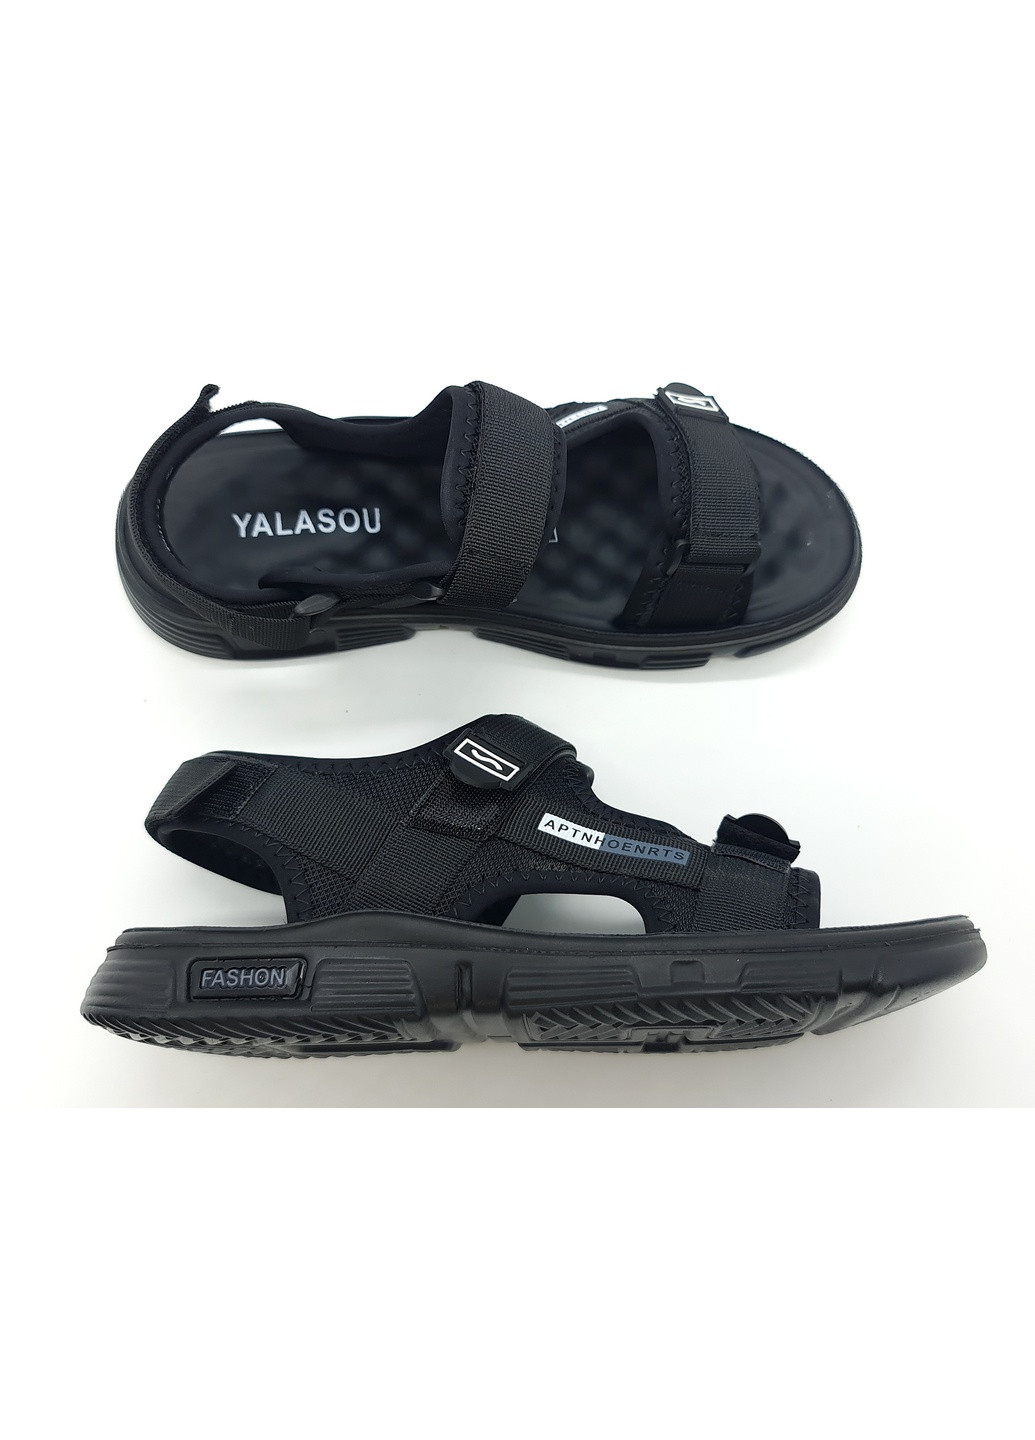 мужские сандалии черные текстиль ya-14-3 26,5 см (р) Yalasou